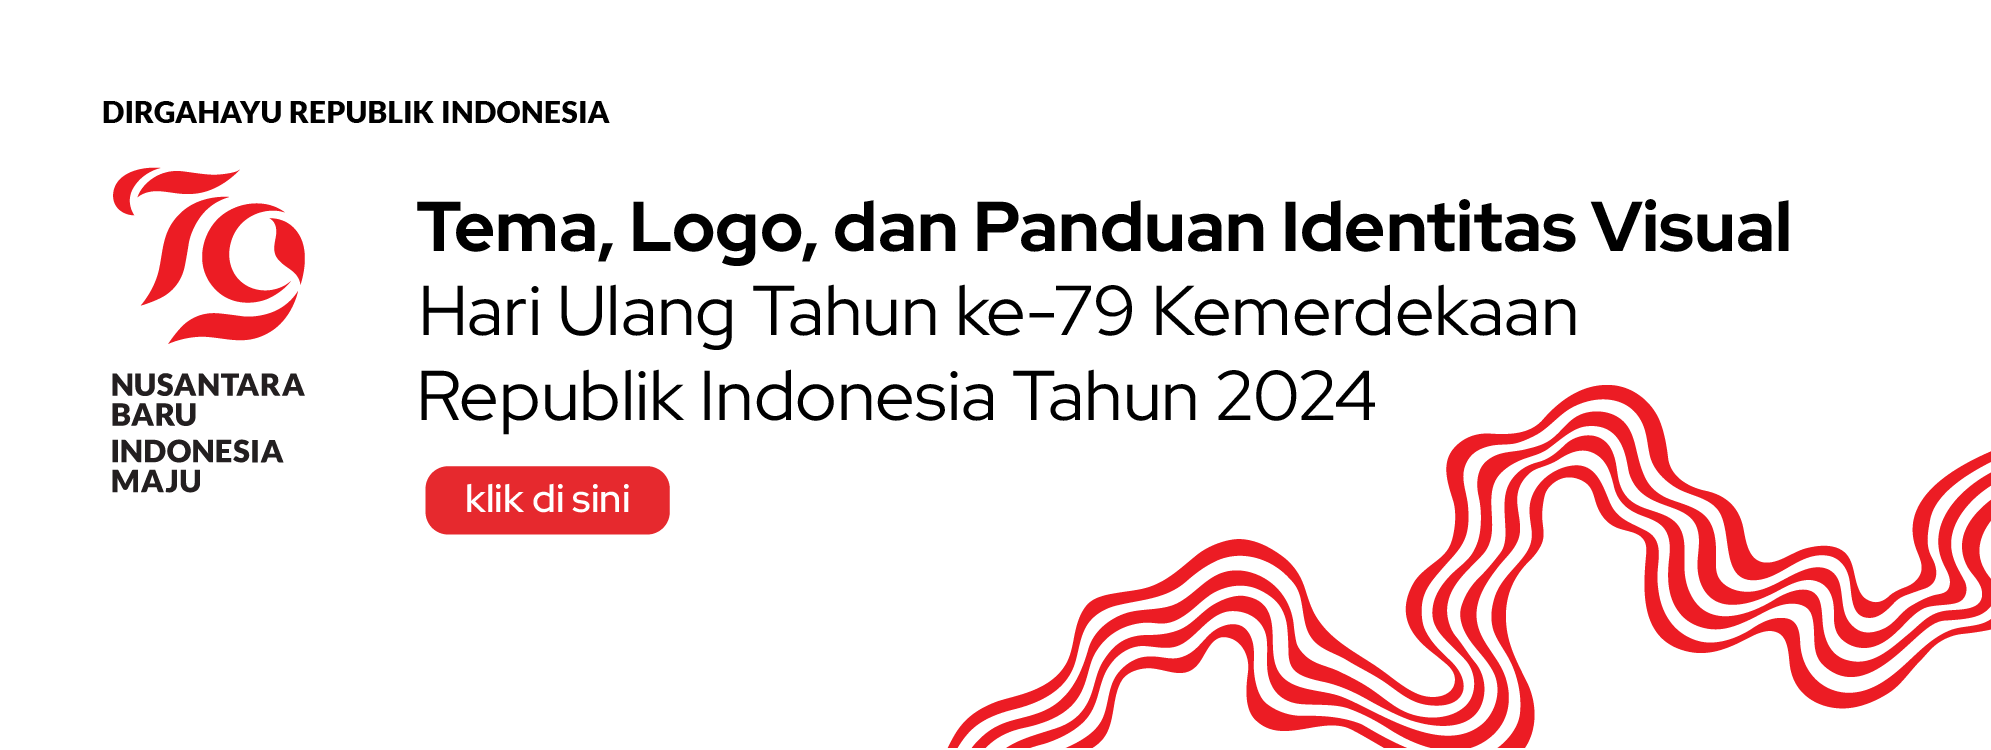 Tema, Logo dan Panduan Identitas Visual HUT ke 79 Kemerdekaan RI Tahun 2024